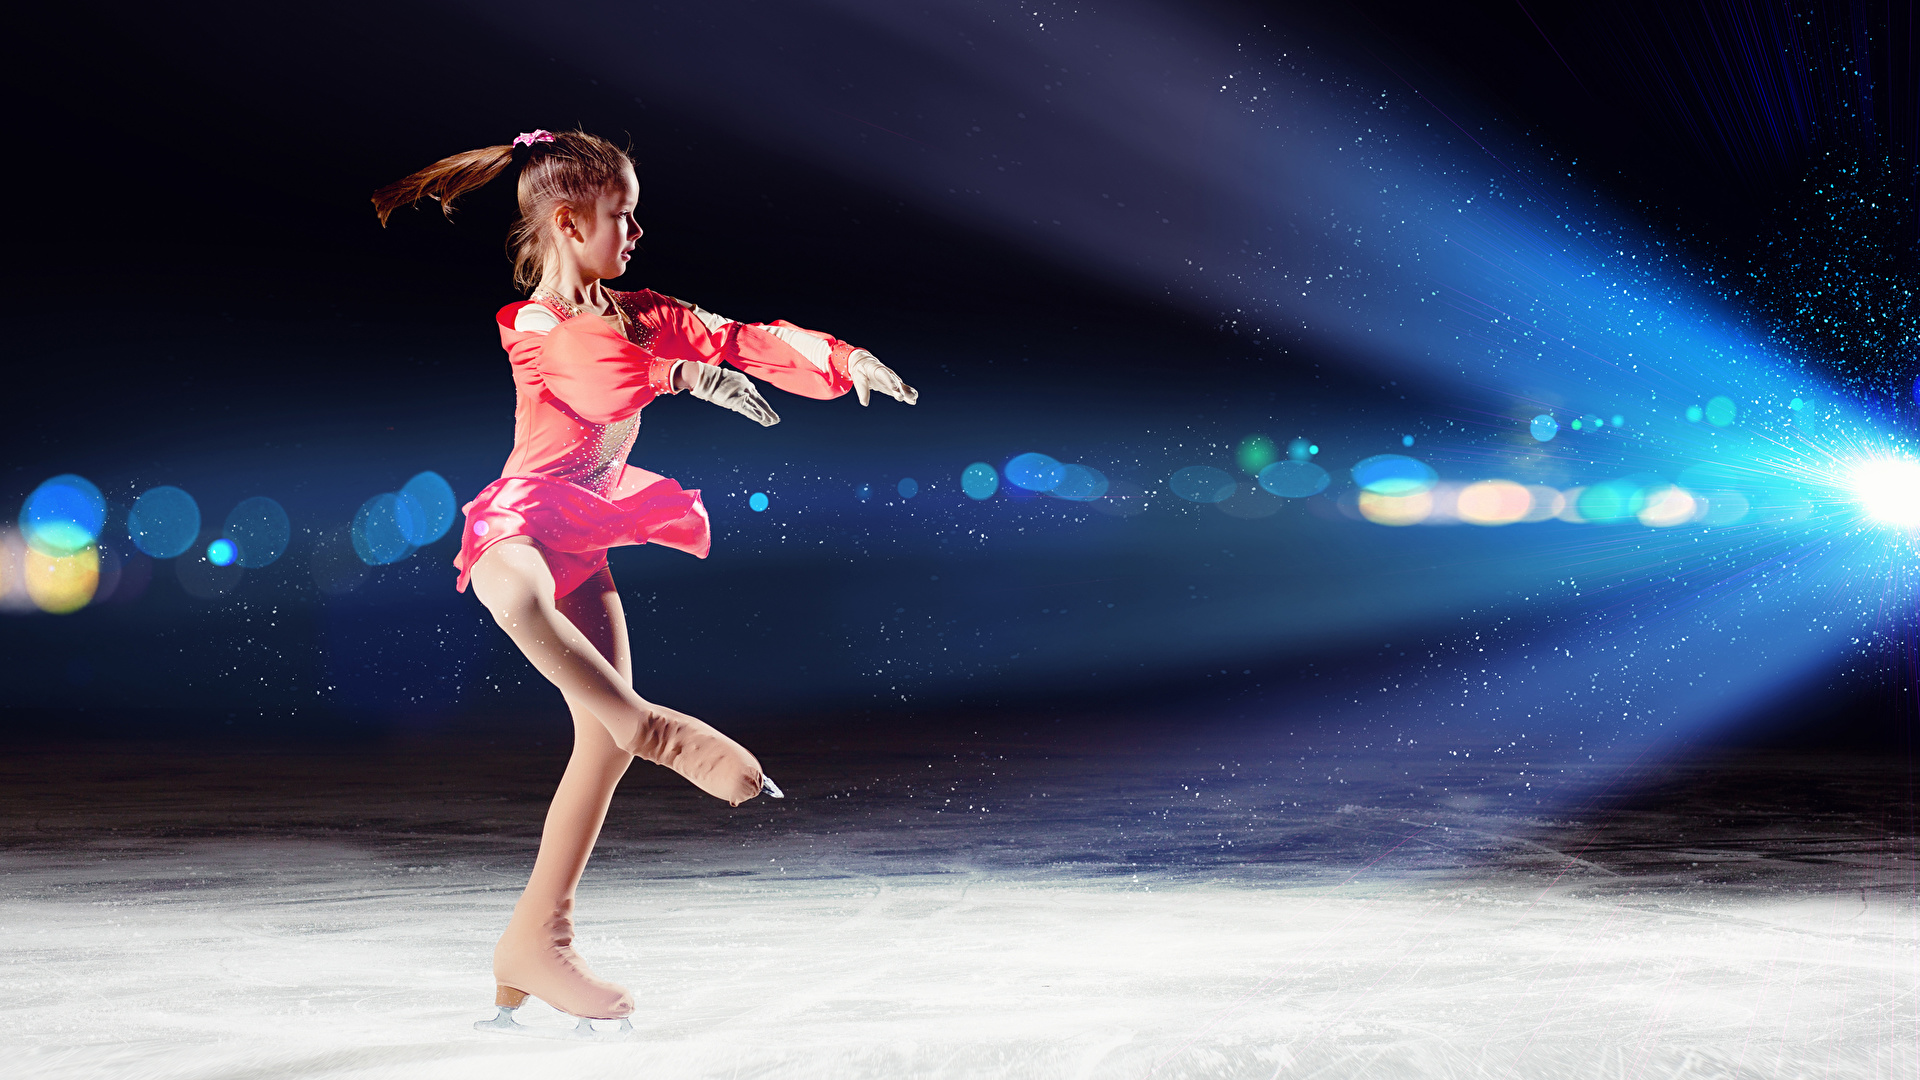 壁紙 19x1080 小さな女の子 氷 スケート靴 ダンス 子供 ダウンロード 写真